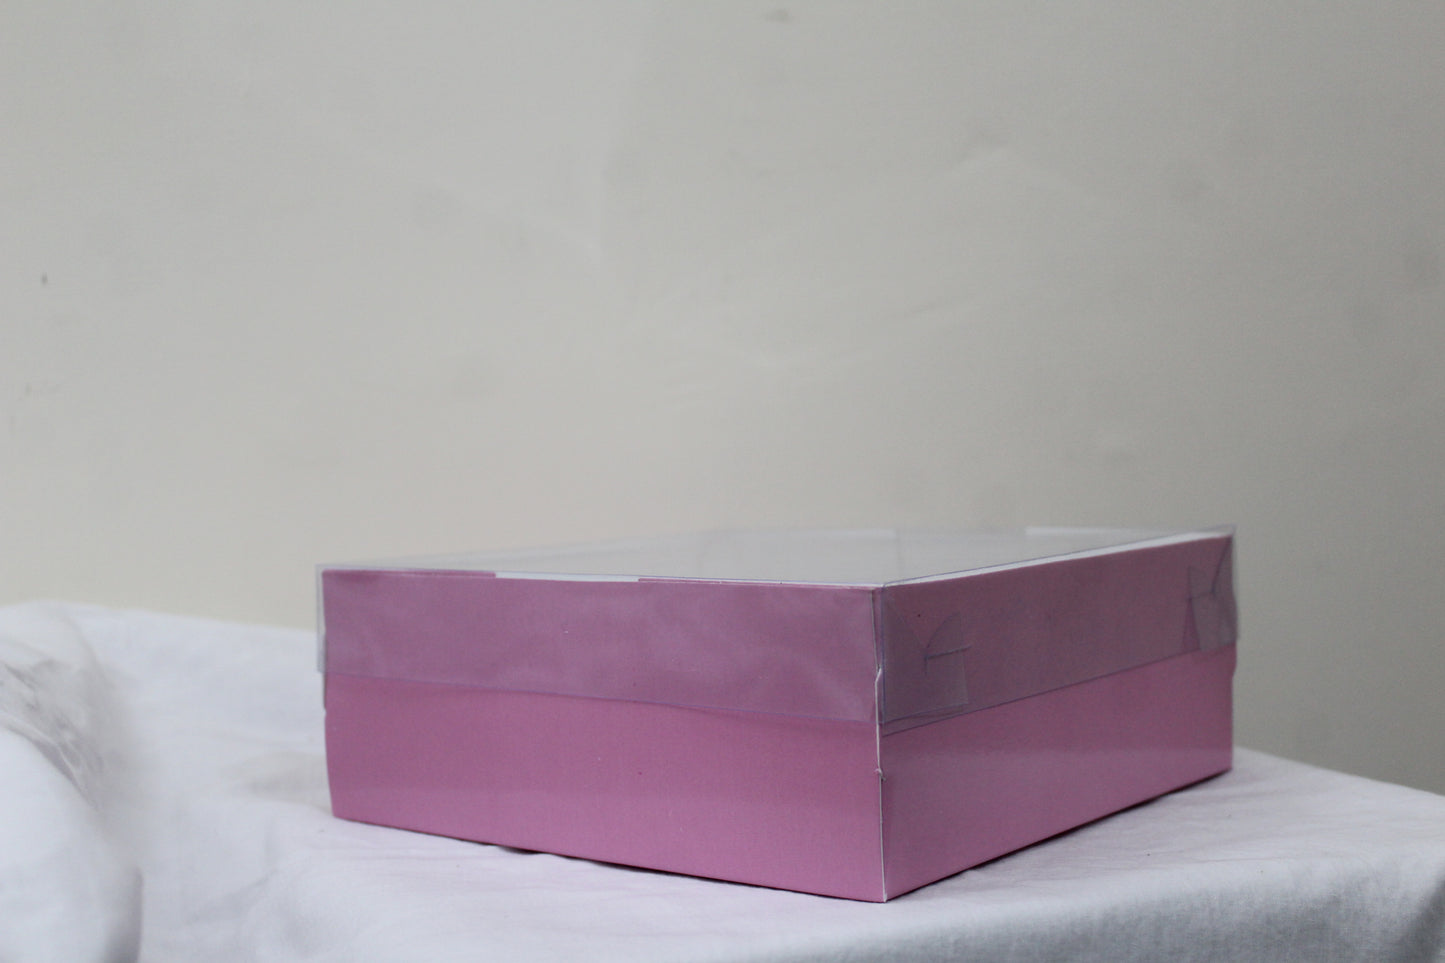 8x8x3 inch Clear Lid Box